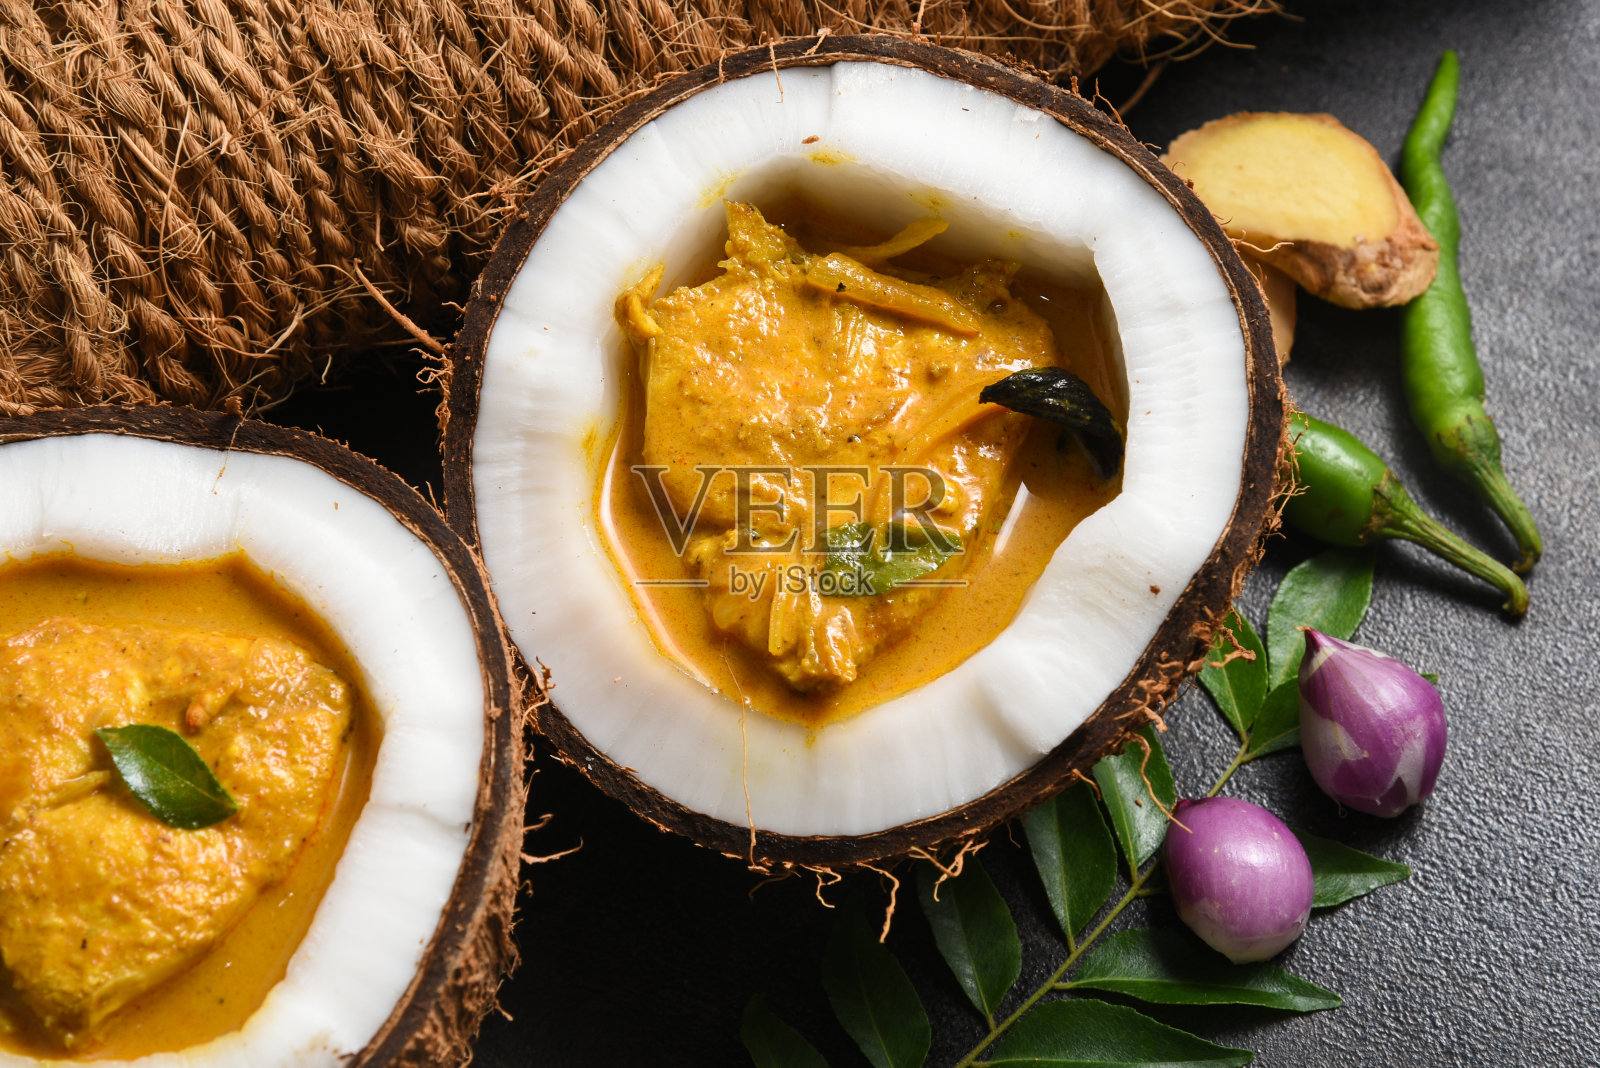 用辛辣的椰子酱烹制的鱼是印度喀拉拉邦最受欢迎的梭鱼咖喱食物。照片摄影图片